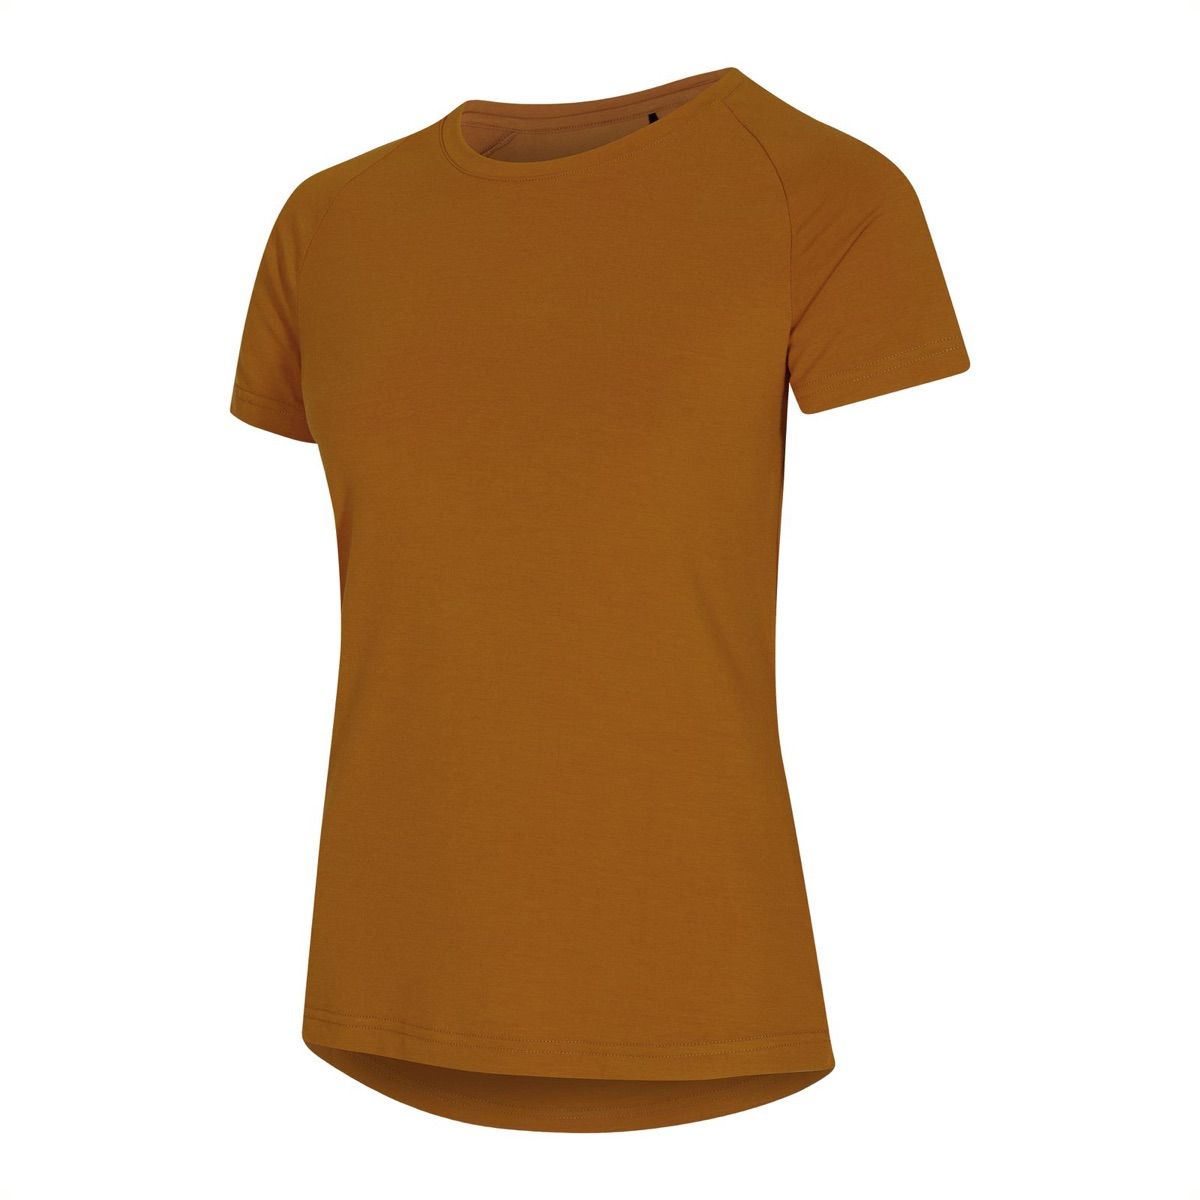 Urberg Women's Vidsel Bamboo T-Shirt Pumpkin Spice